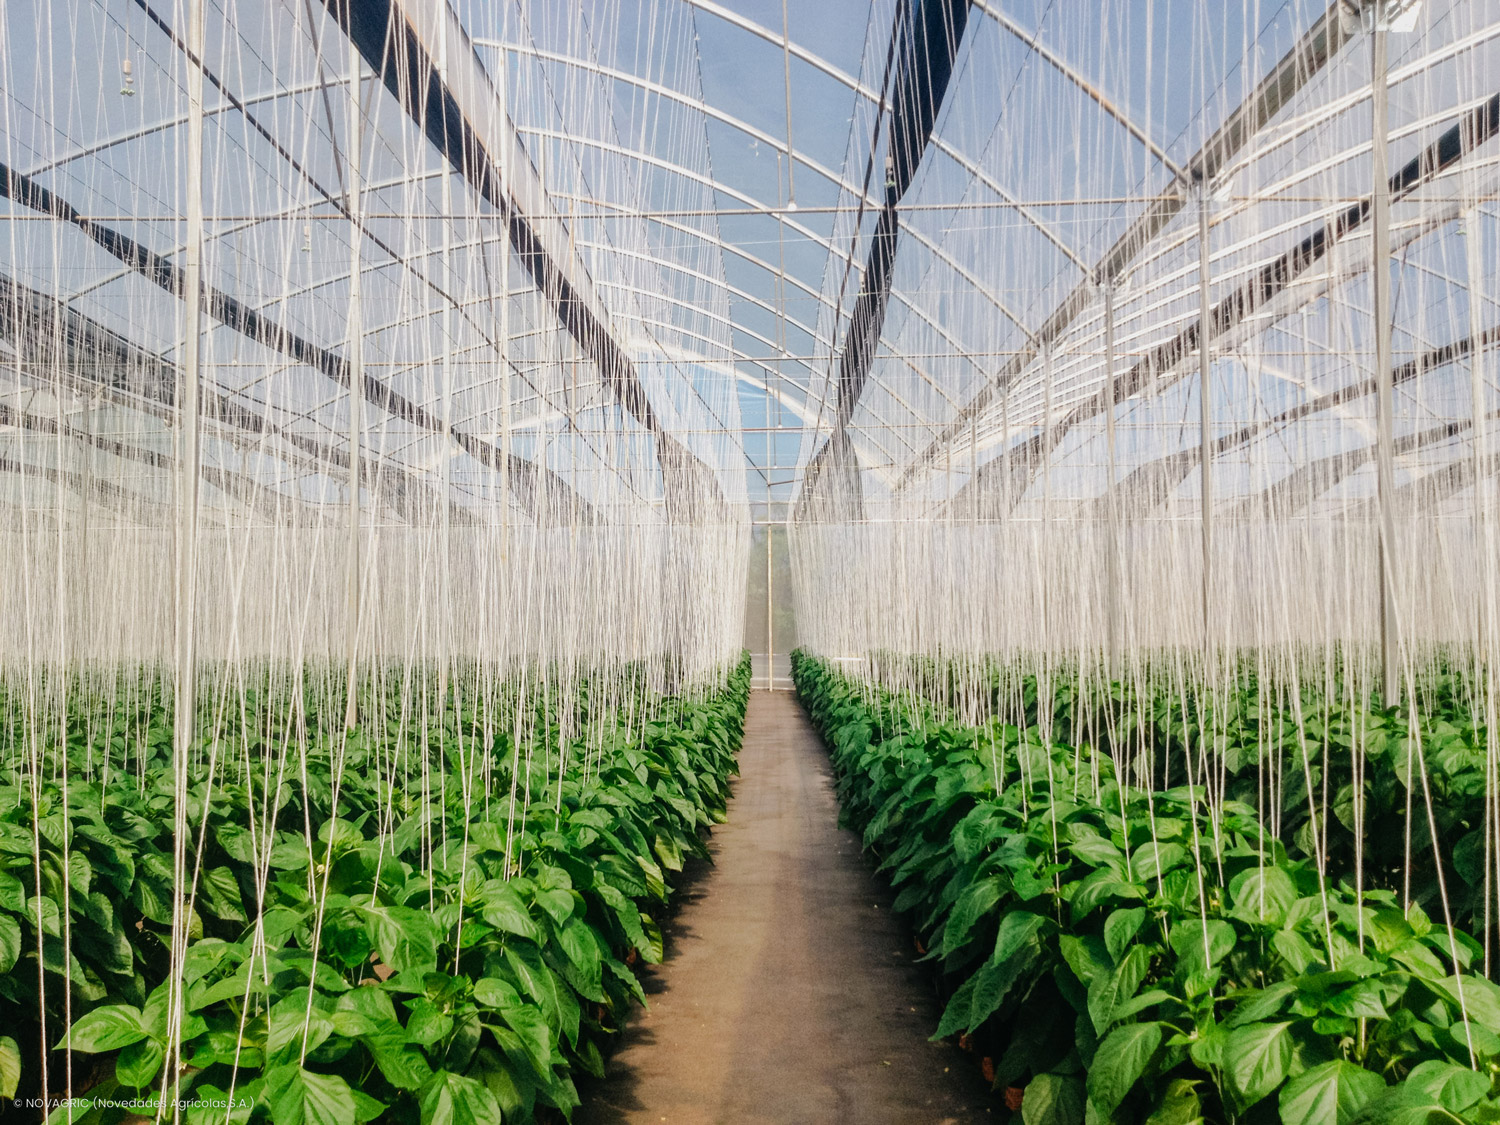 Novagric implementó un proyecto de invernaderos tropicales con equipamiento tecnológico avanzado para el cultivo de pimiento en Vietnam.